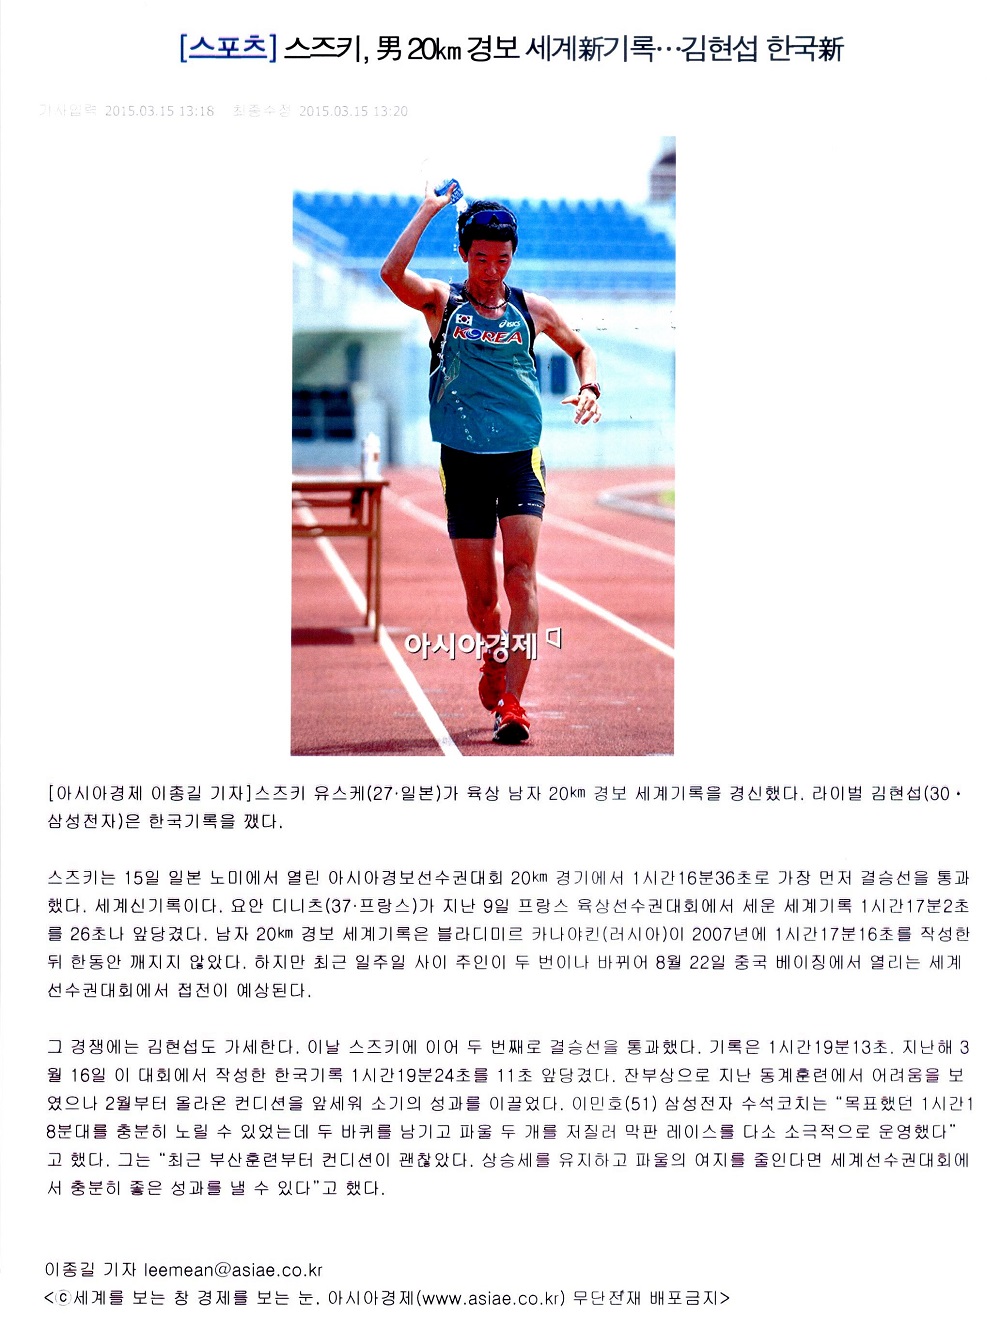 스즈키, 男20km경보 세계新기록...김현섭 한국新